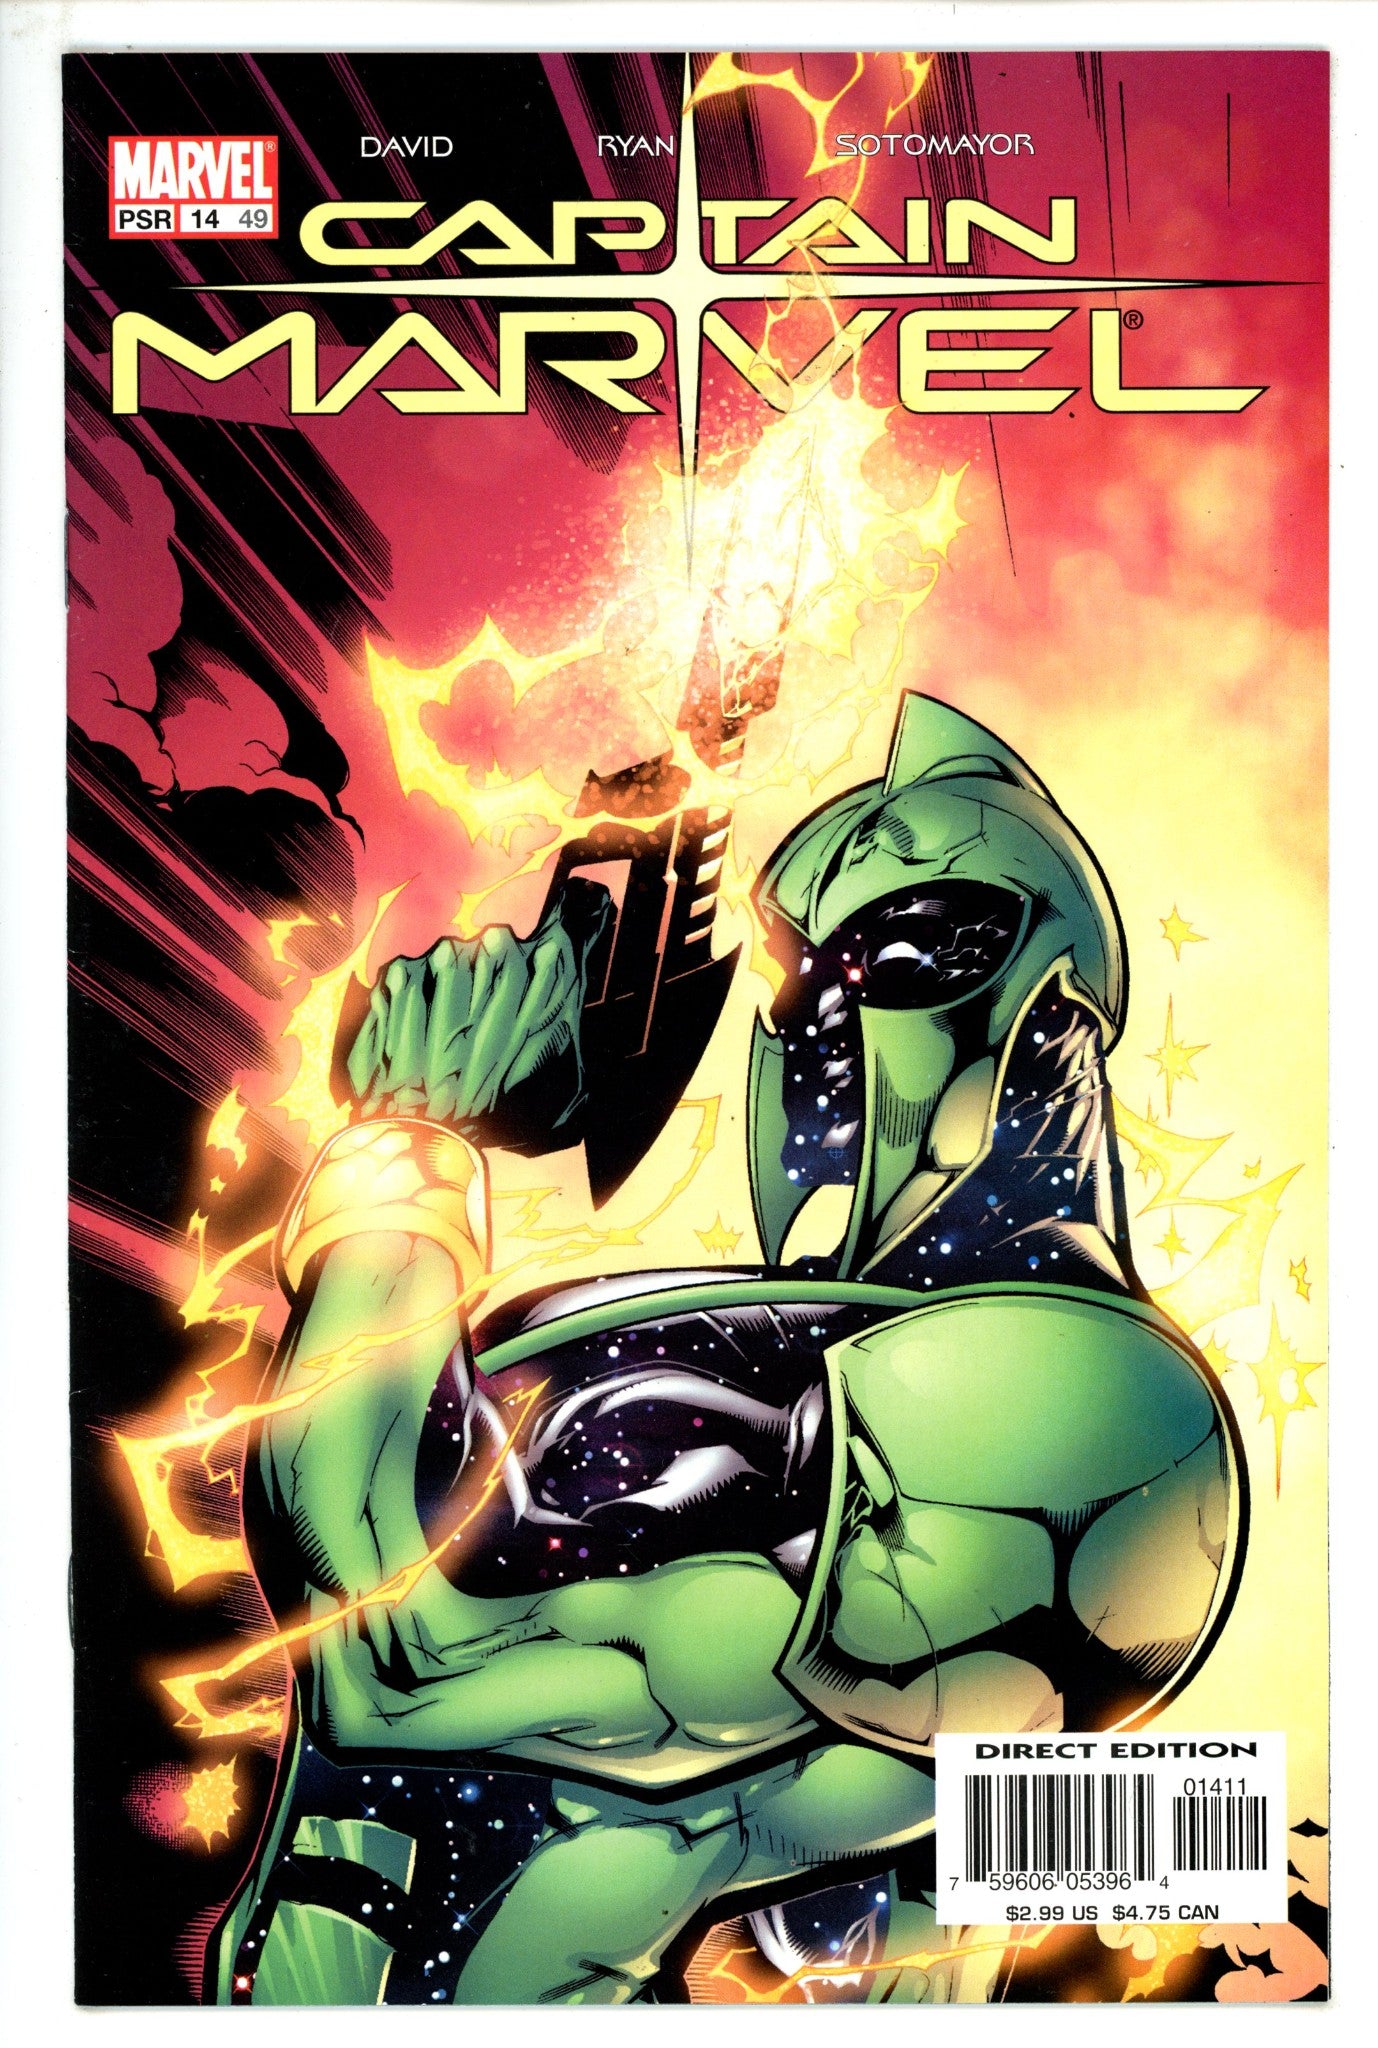 Captain Marvel Vol 6 14 (49) High Grade (2003) 